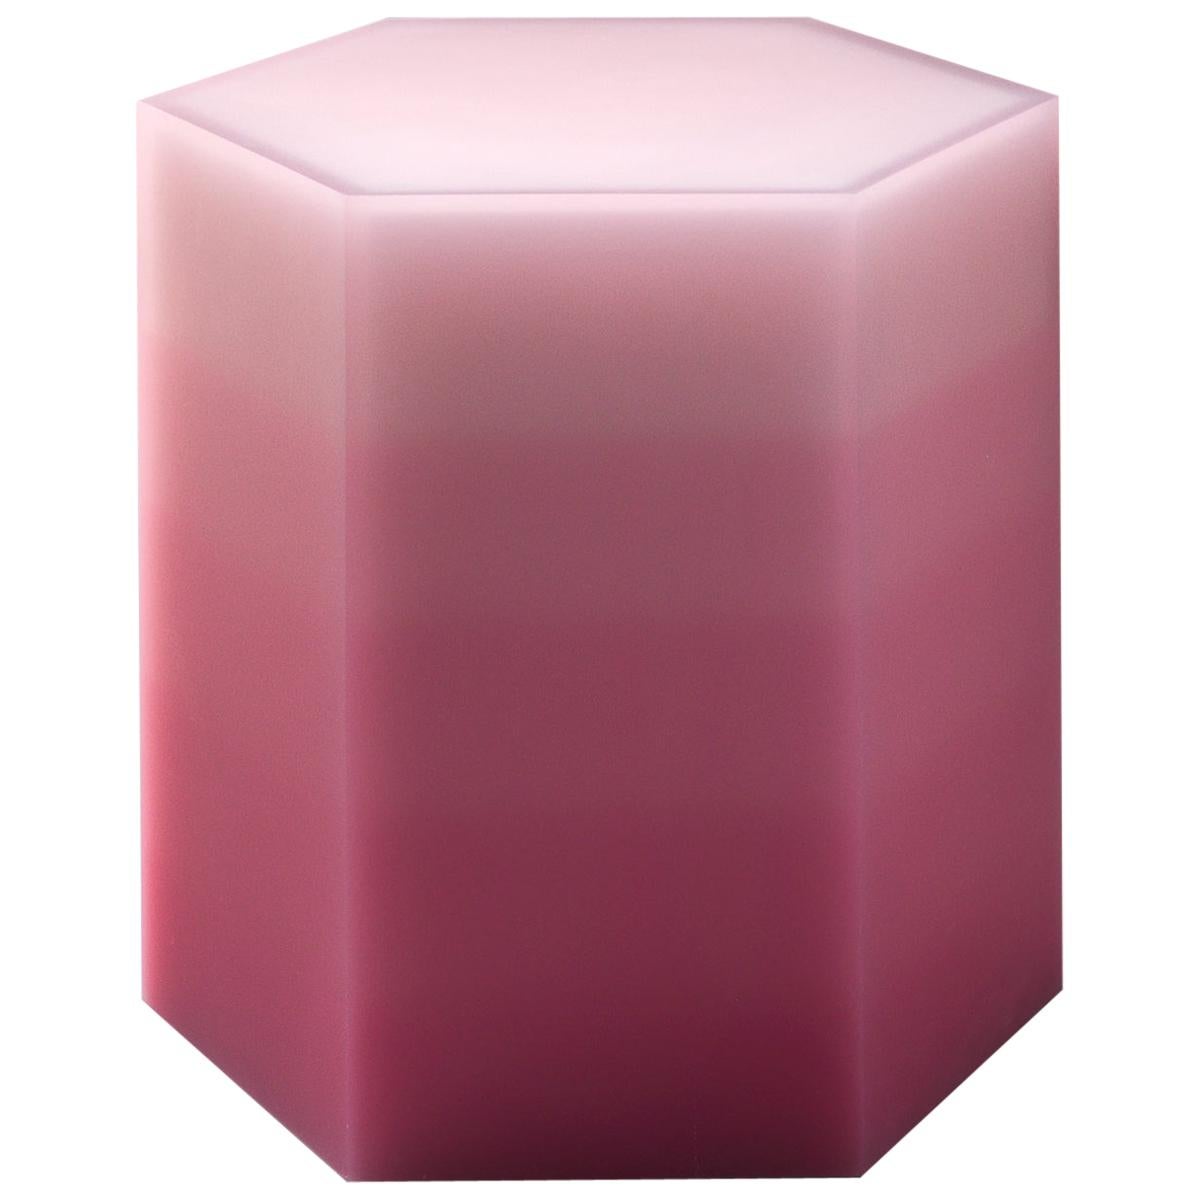 Table d'appoint/tabouret rose Gradient Hex Box Resin de Facture, REP par Tuleste Factory 